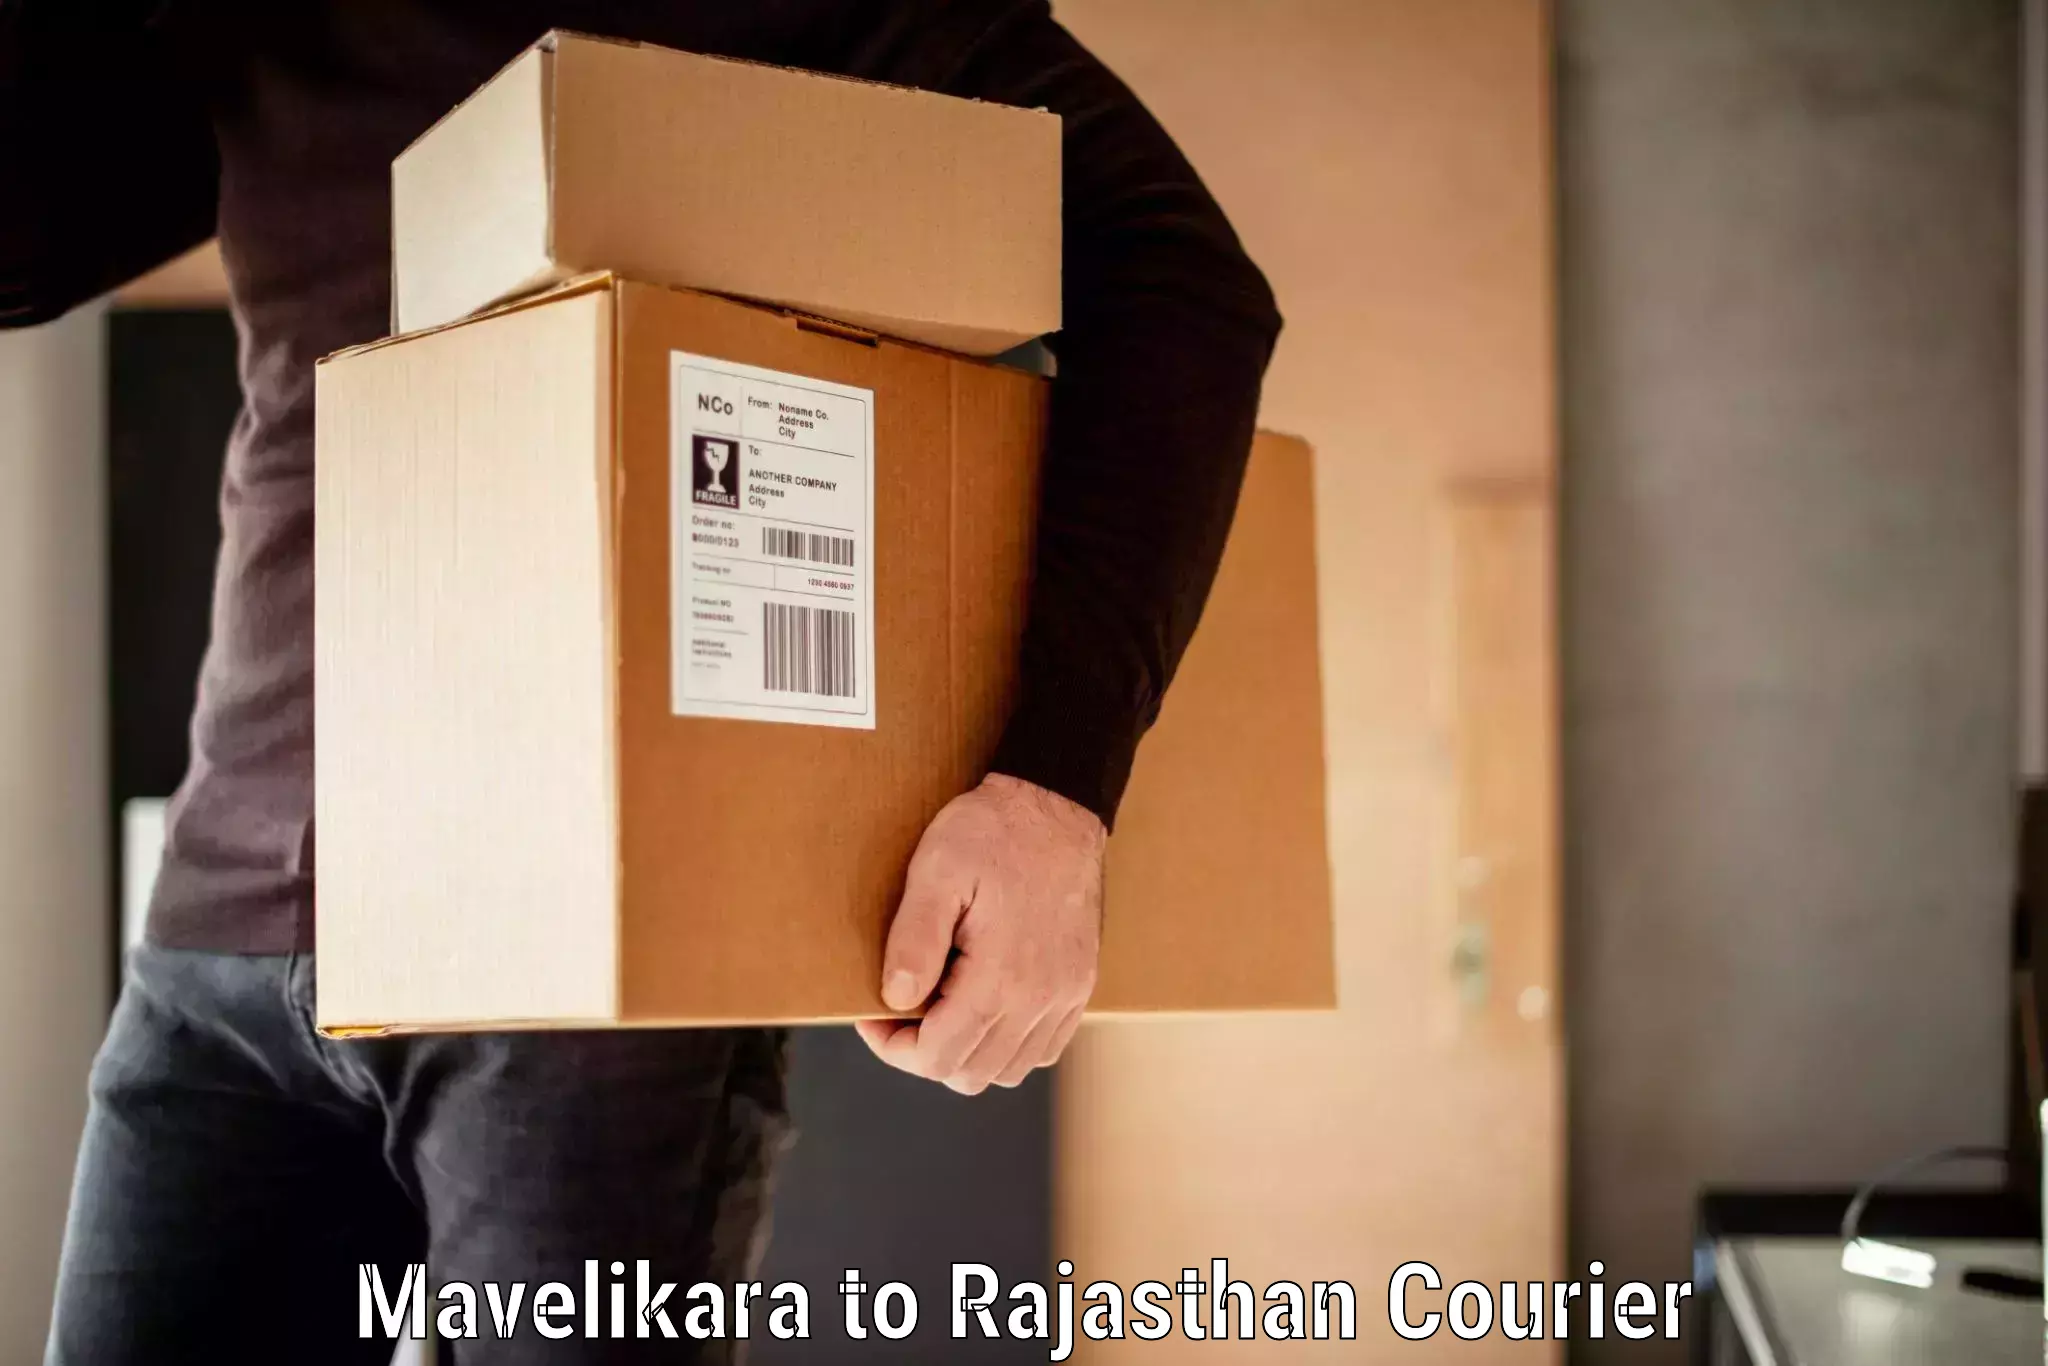 Luggage shipping planner Mavelikara to Mandalgarh